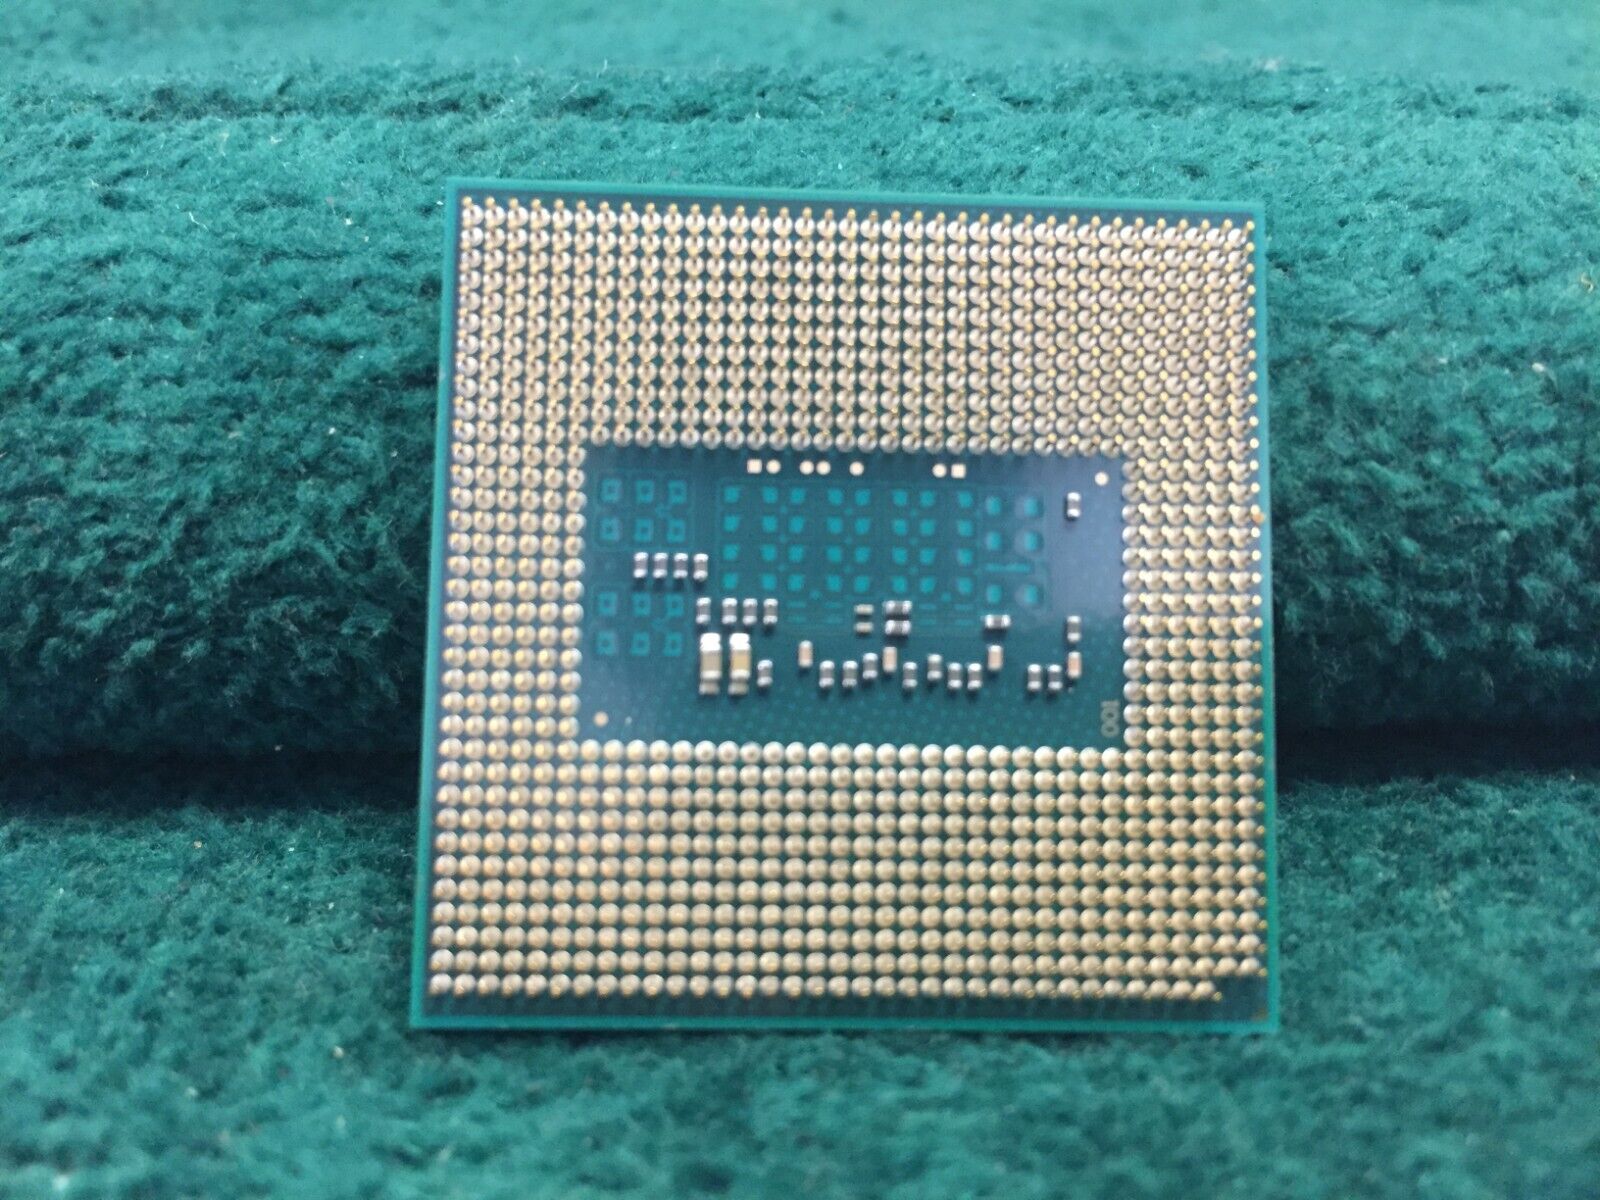 Intel Core I7-4700Mq 2.4 GHz 4-Core Mobile Processor 